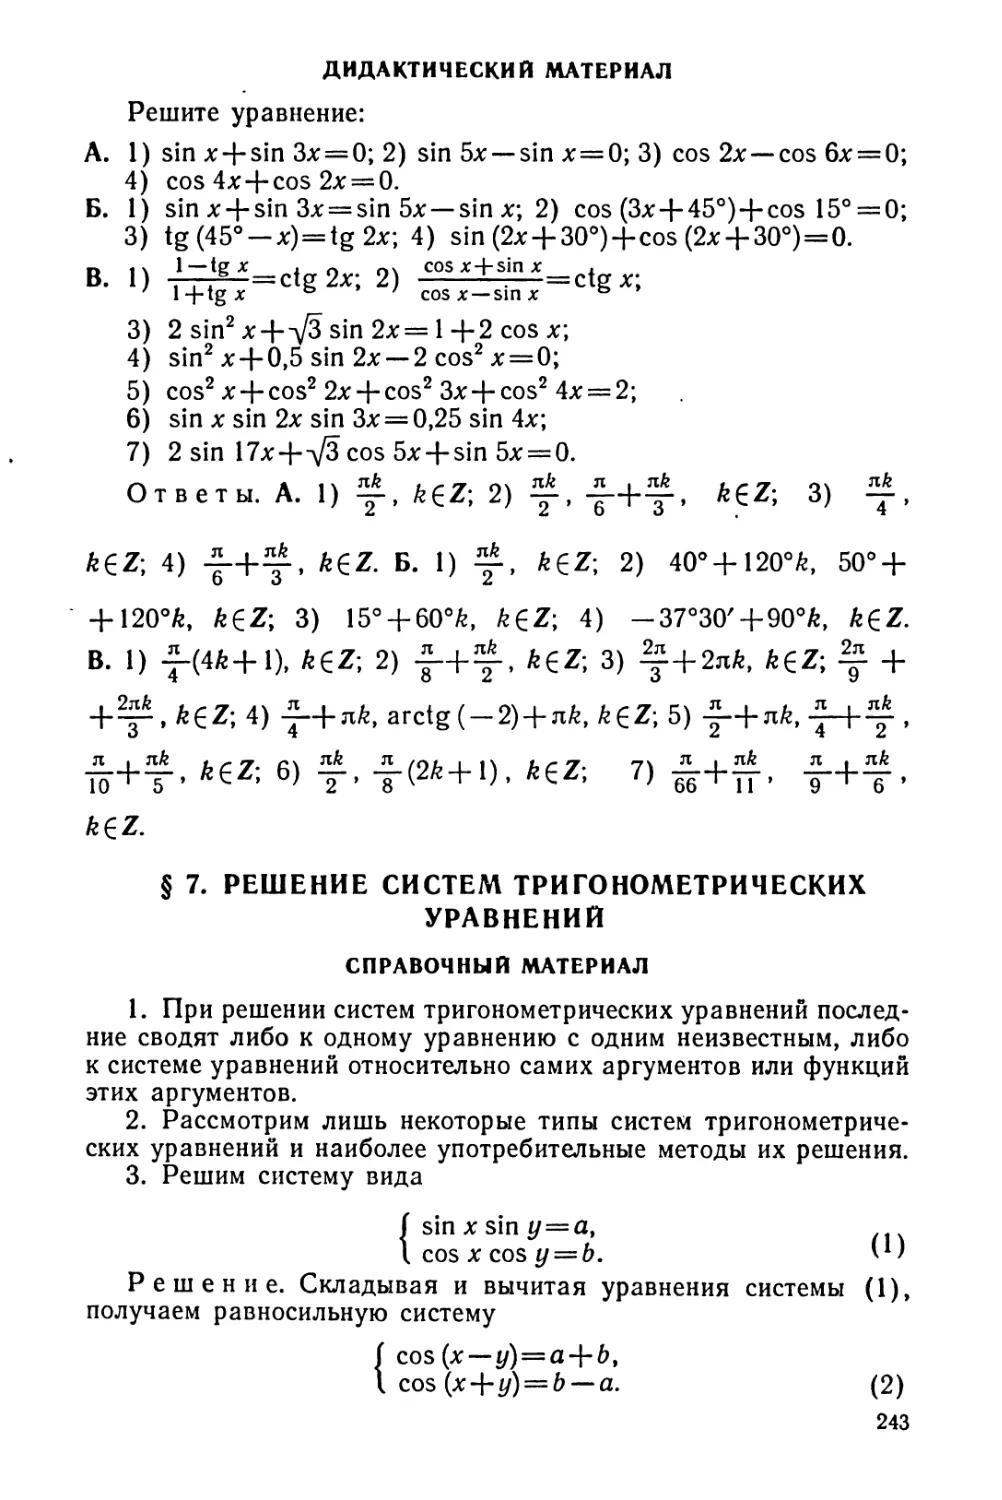 Решение систем тригонометрических уравнений